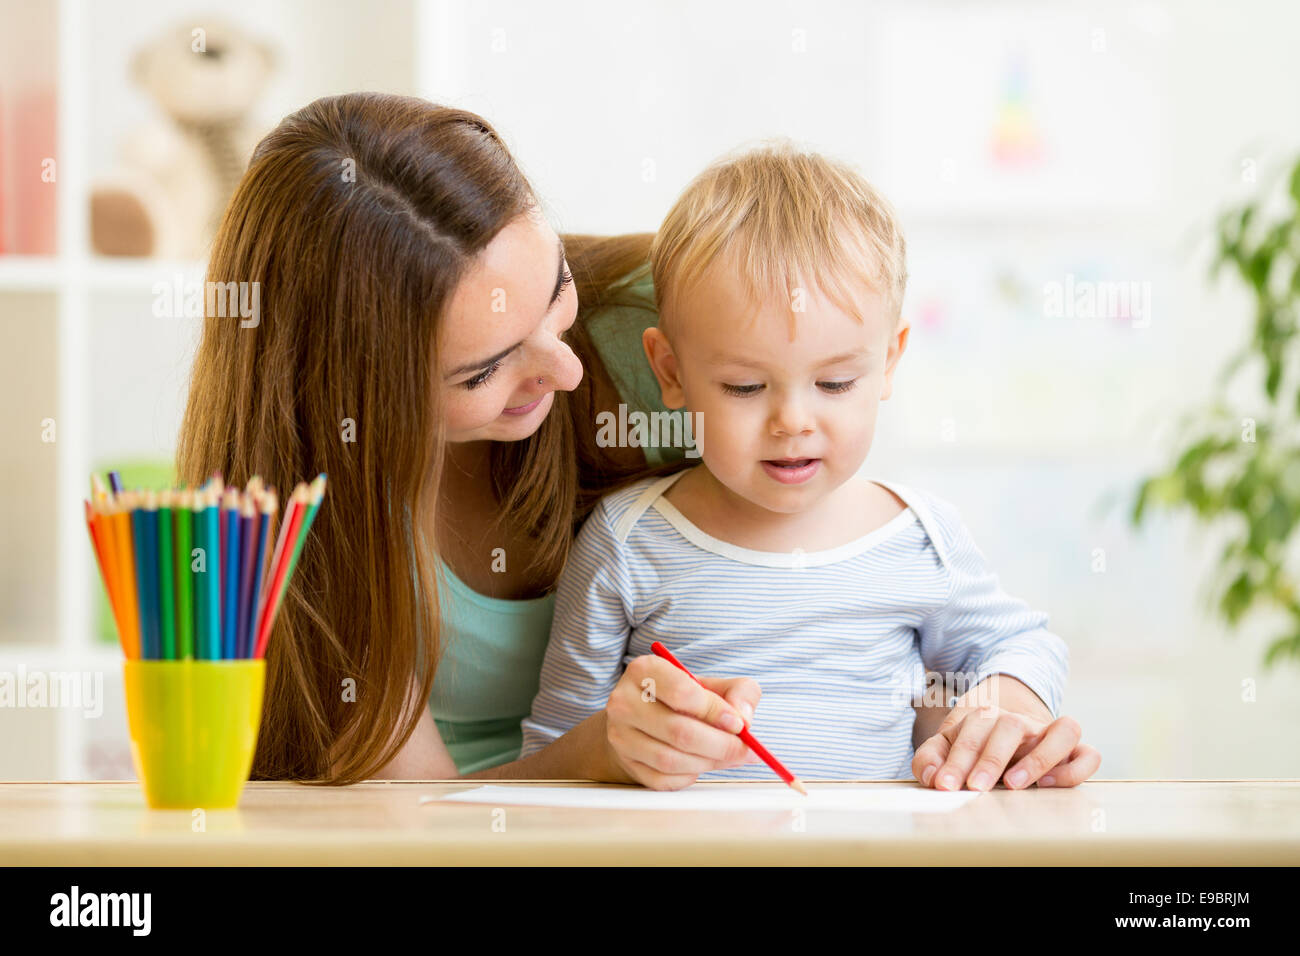 https://c8.alamy.com/comp/E9BRJM/mother-and-her-child-pencil-together-E9BRJM.jpg